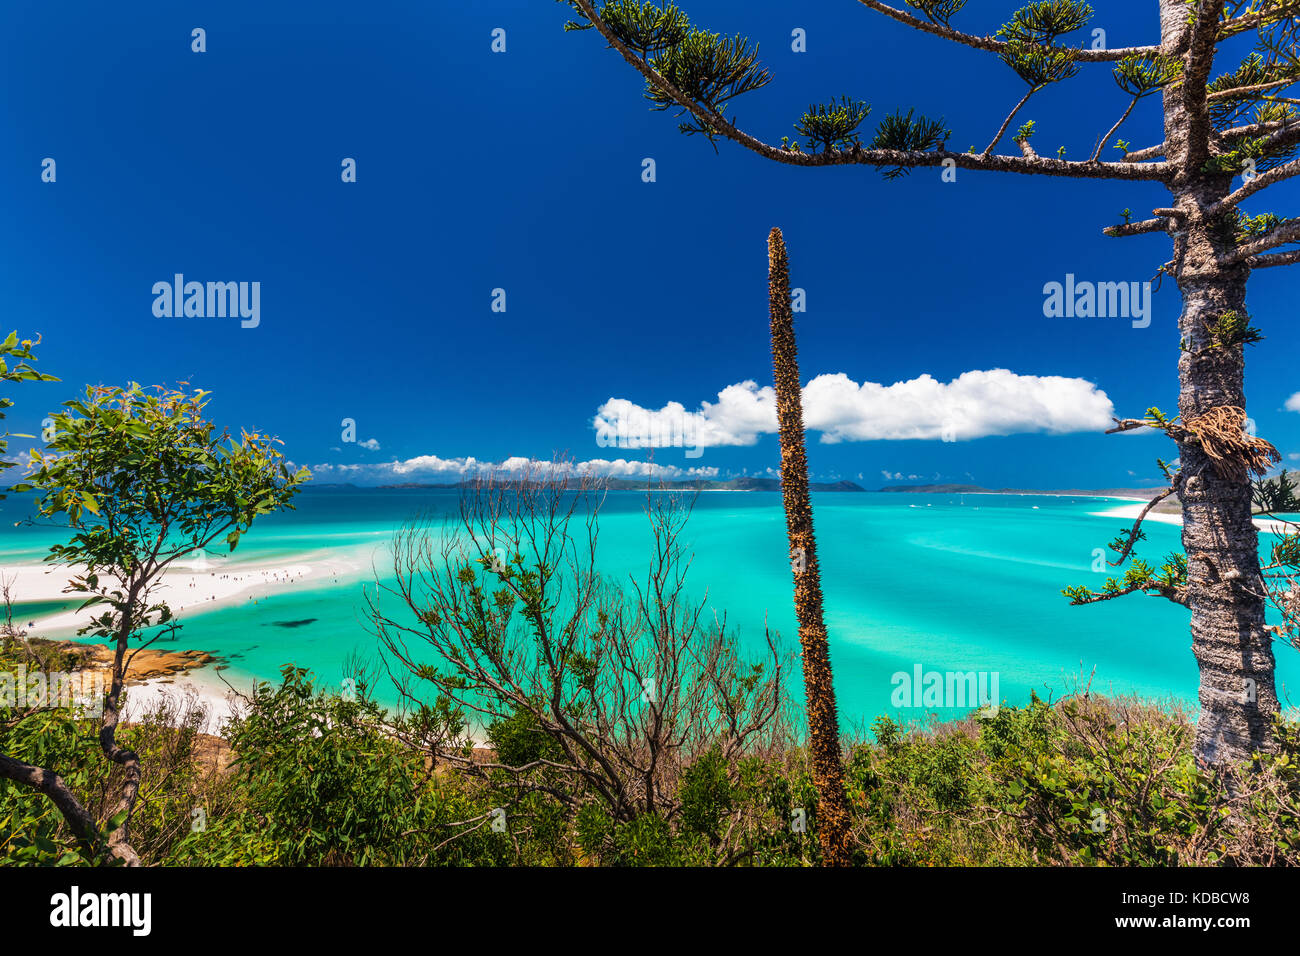 Amazing célèbre Whitehaven Beach dans les Whitsunday Islands, Queensland, Australie Banque D'Images